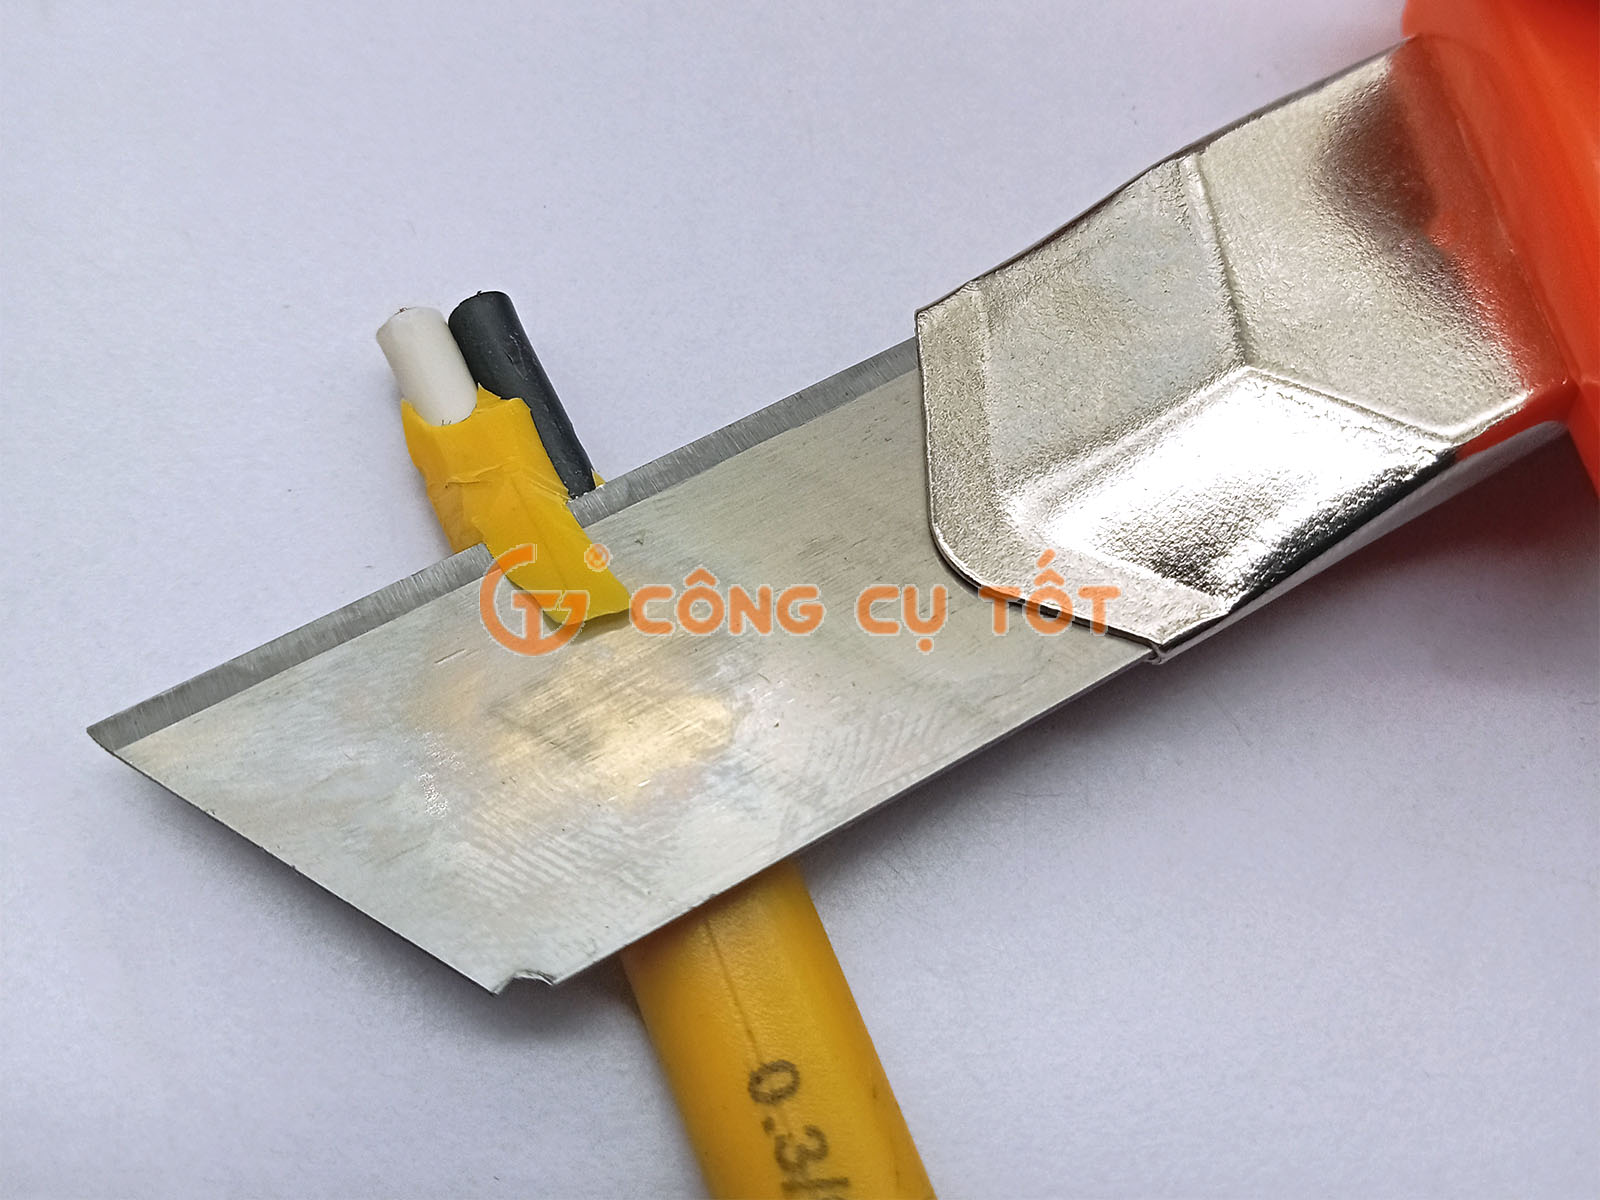 Lưỡi dao dùng để cắt dây điện